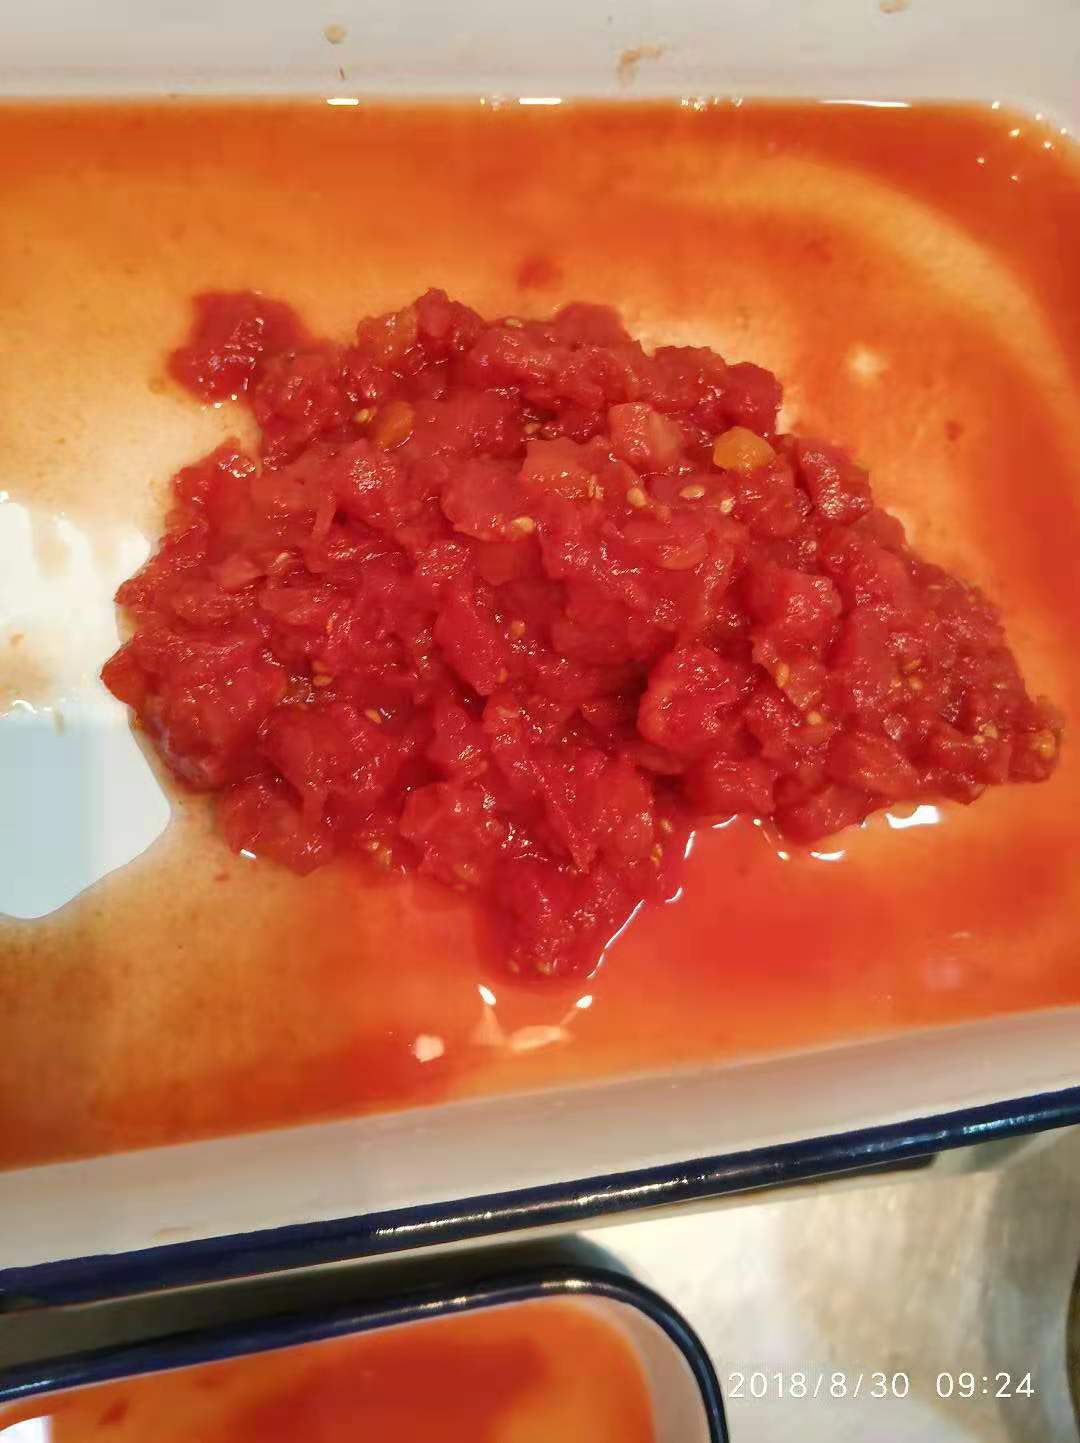 Chopped Tomato-tomato in tin 400g,800g, 2500g,2850g